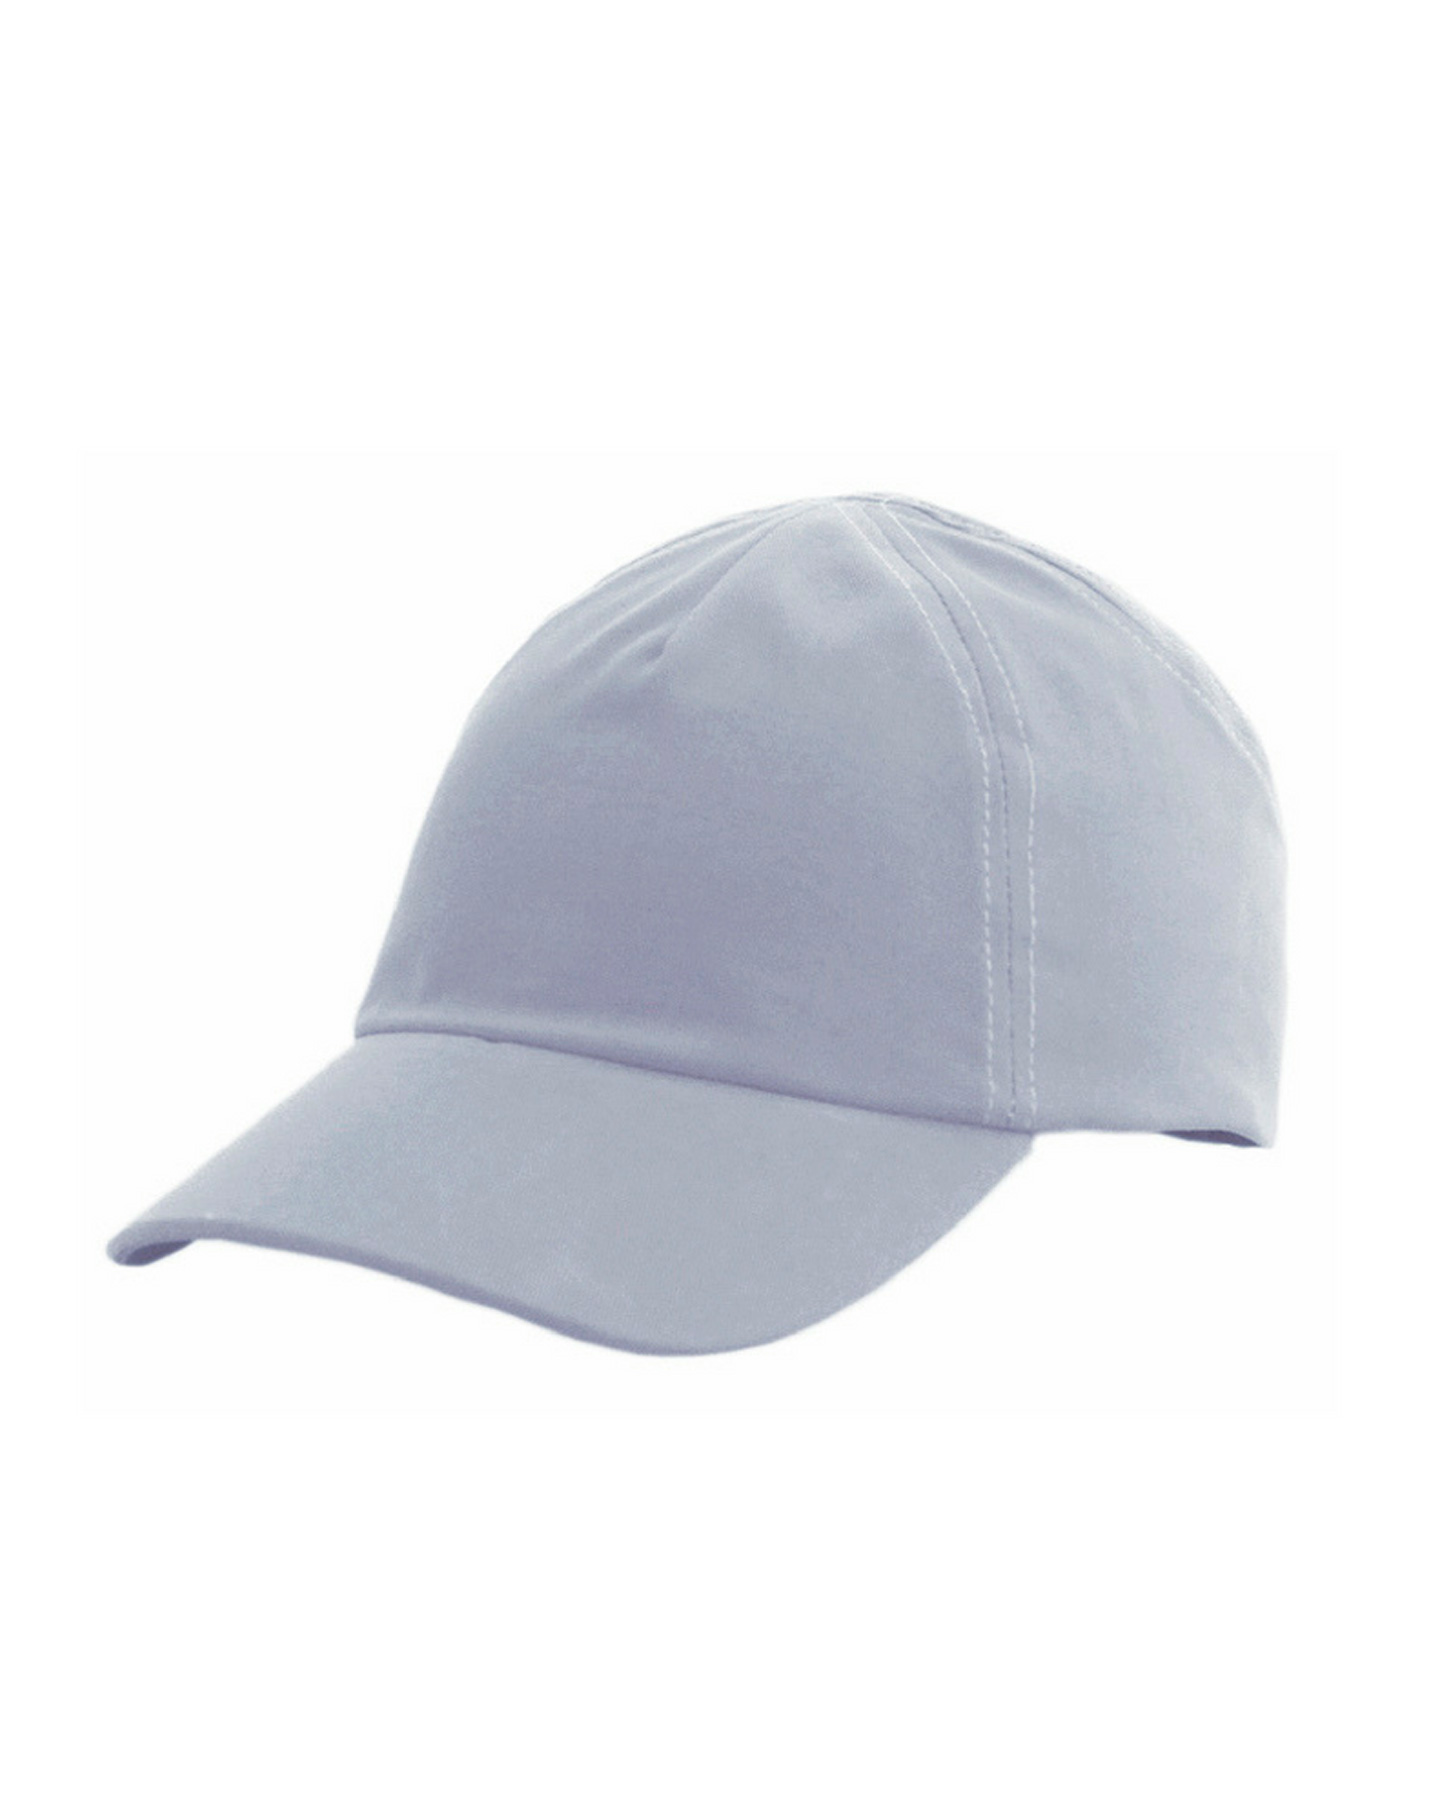 КАСКЕТКА-бейсболка защитная "RZ FavoriT CAP" РОСОМЗ™, цвет: светло-серый (95511)